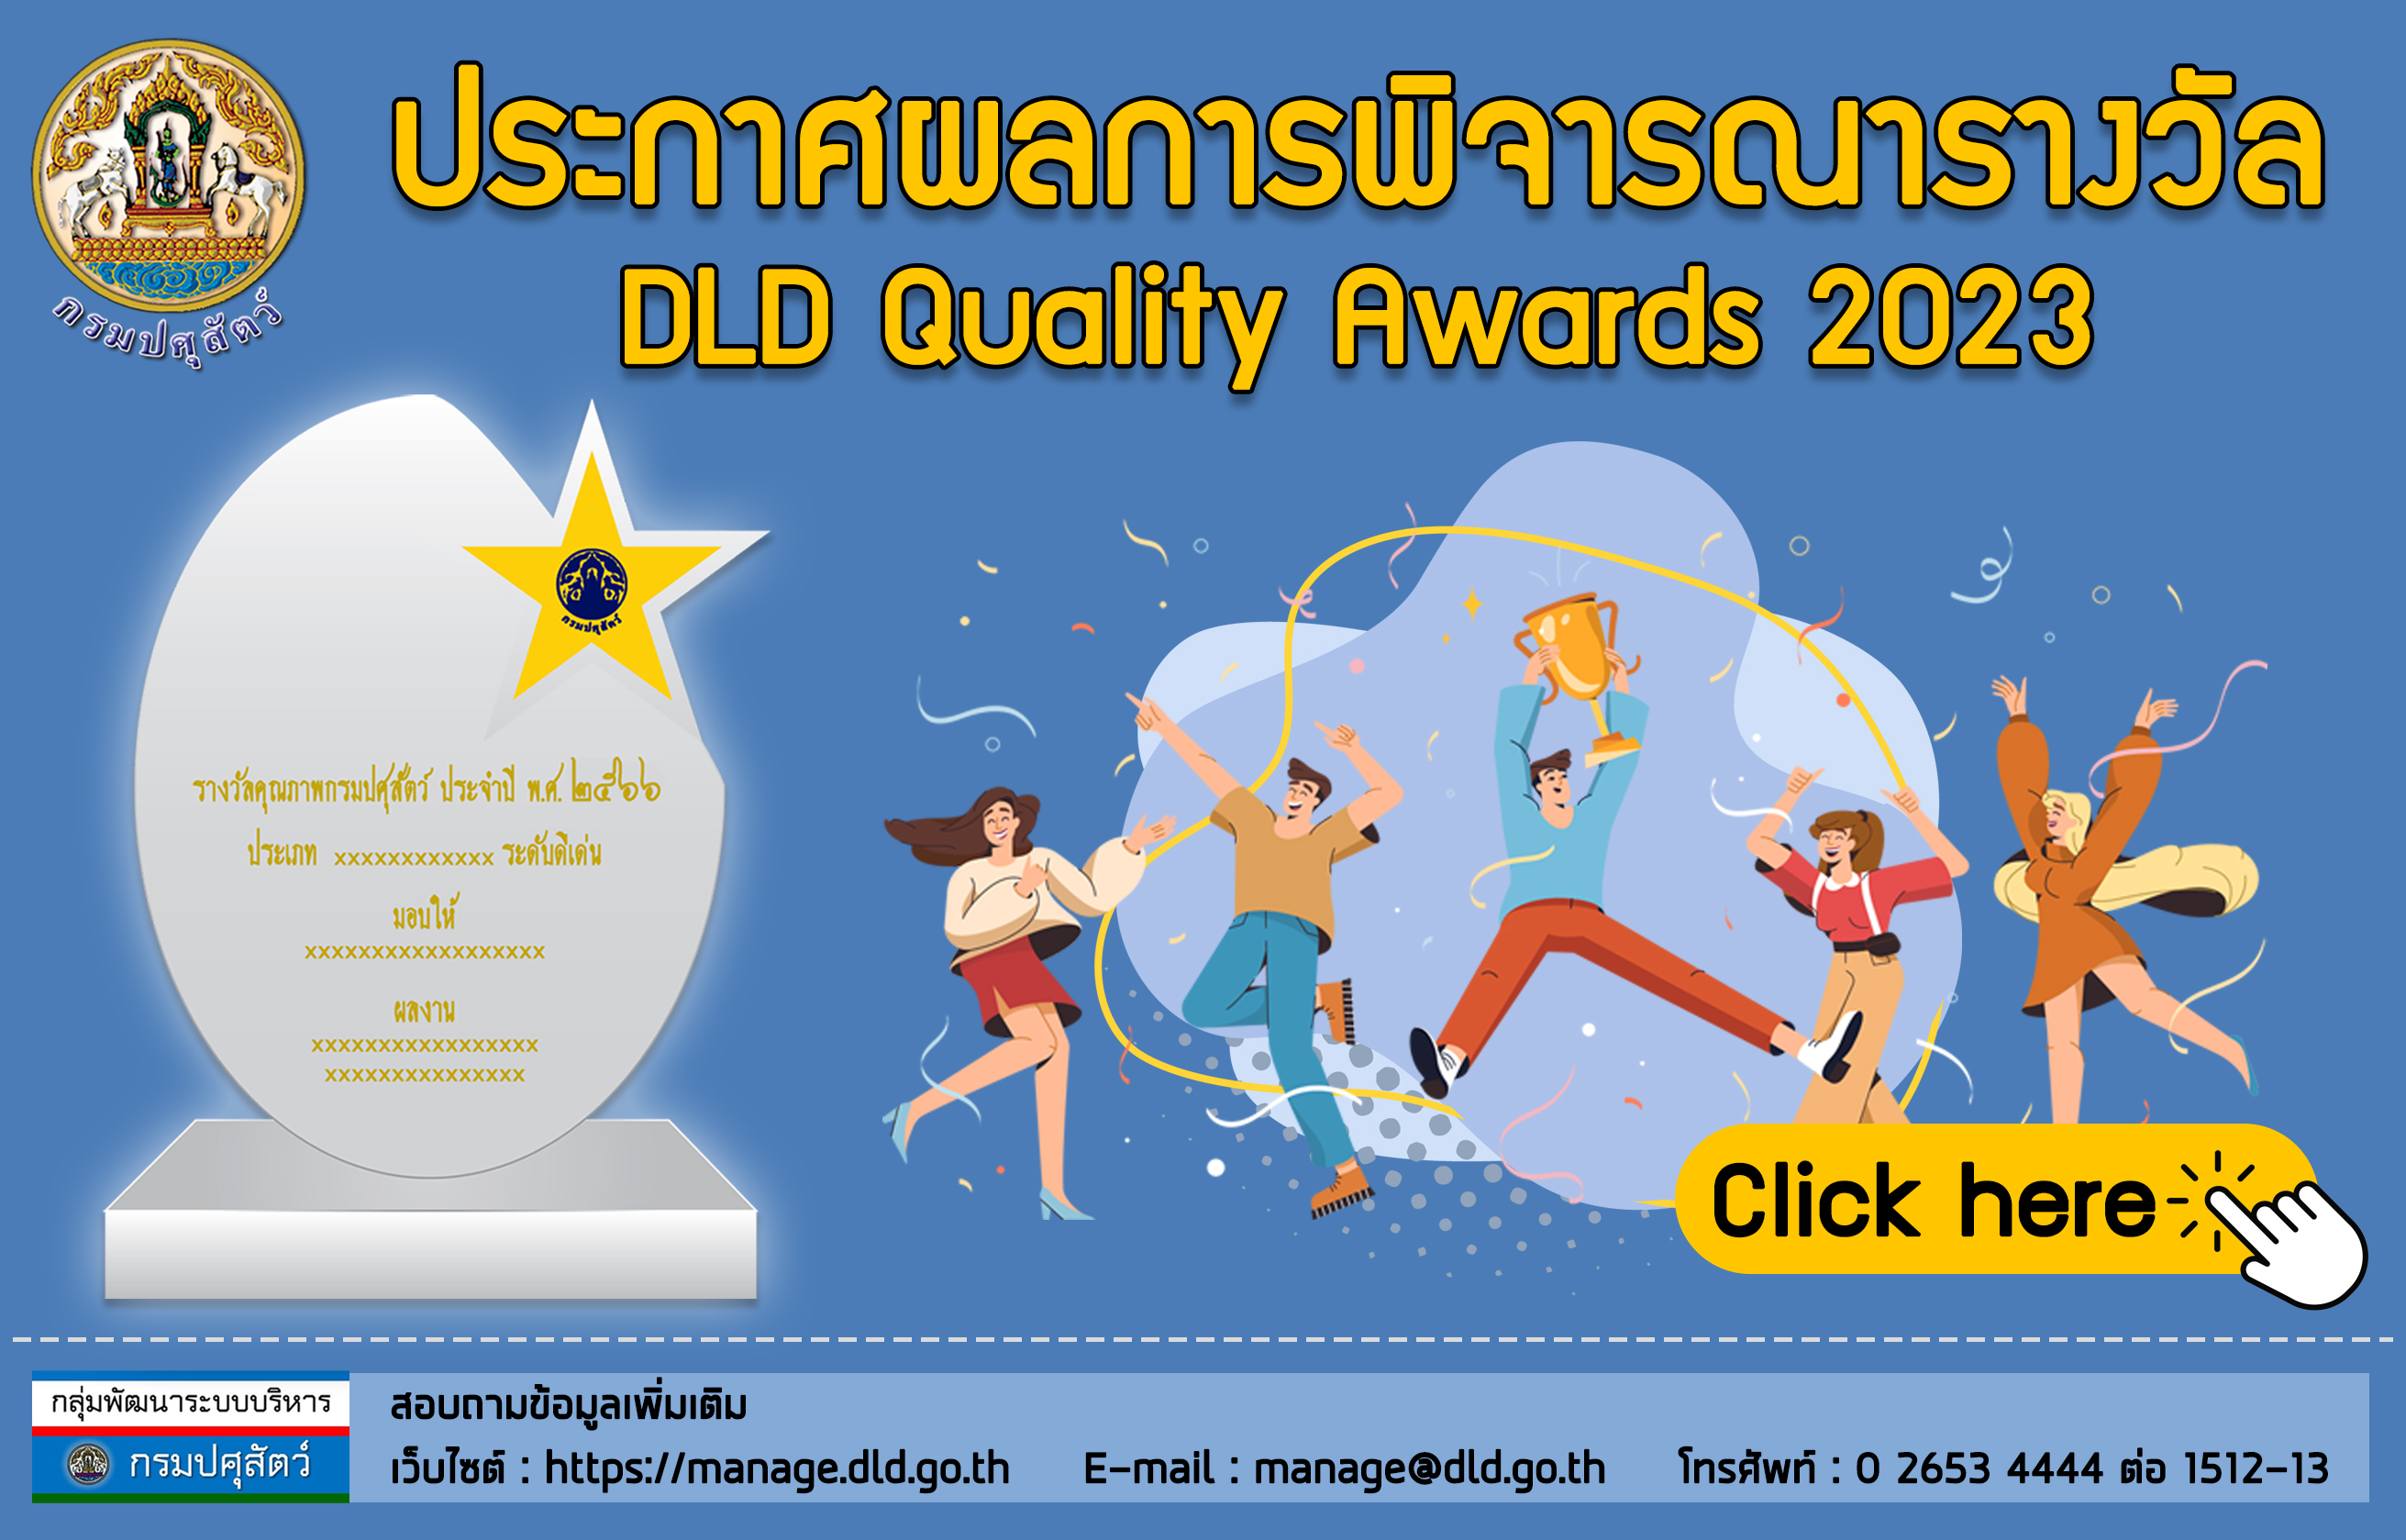 ประกาศผลการพิจารณารางวัล DLD Quality Awards 2023